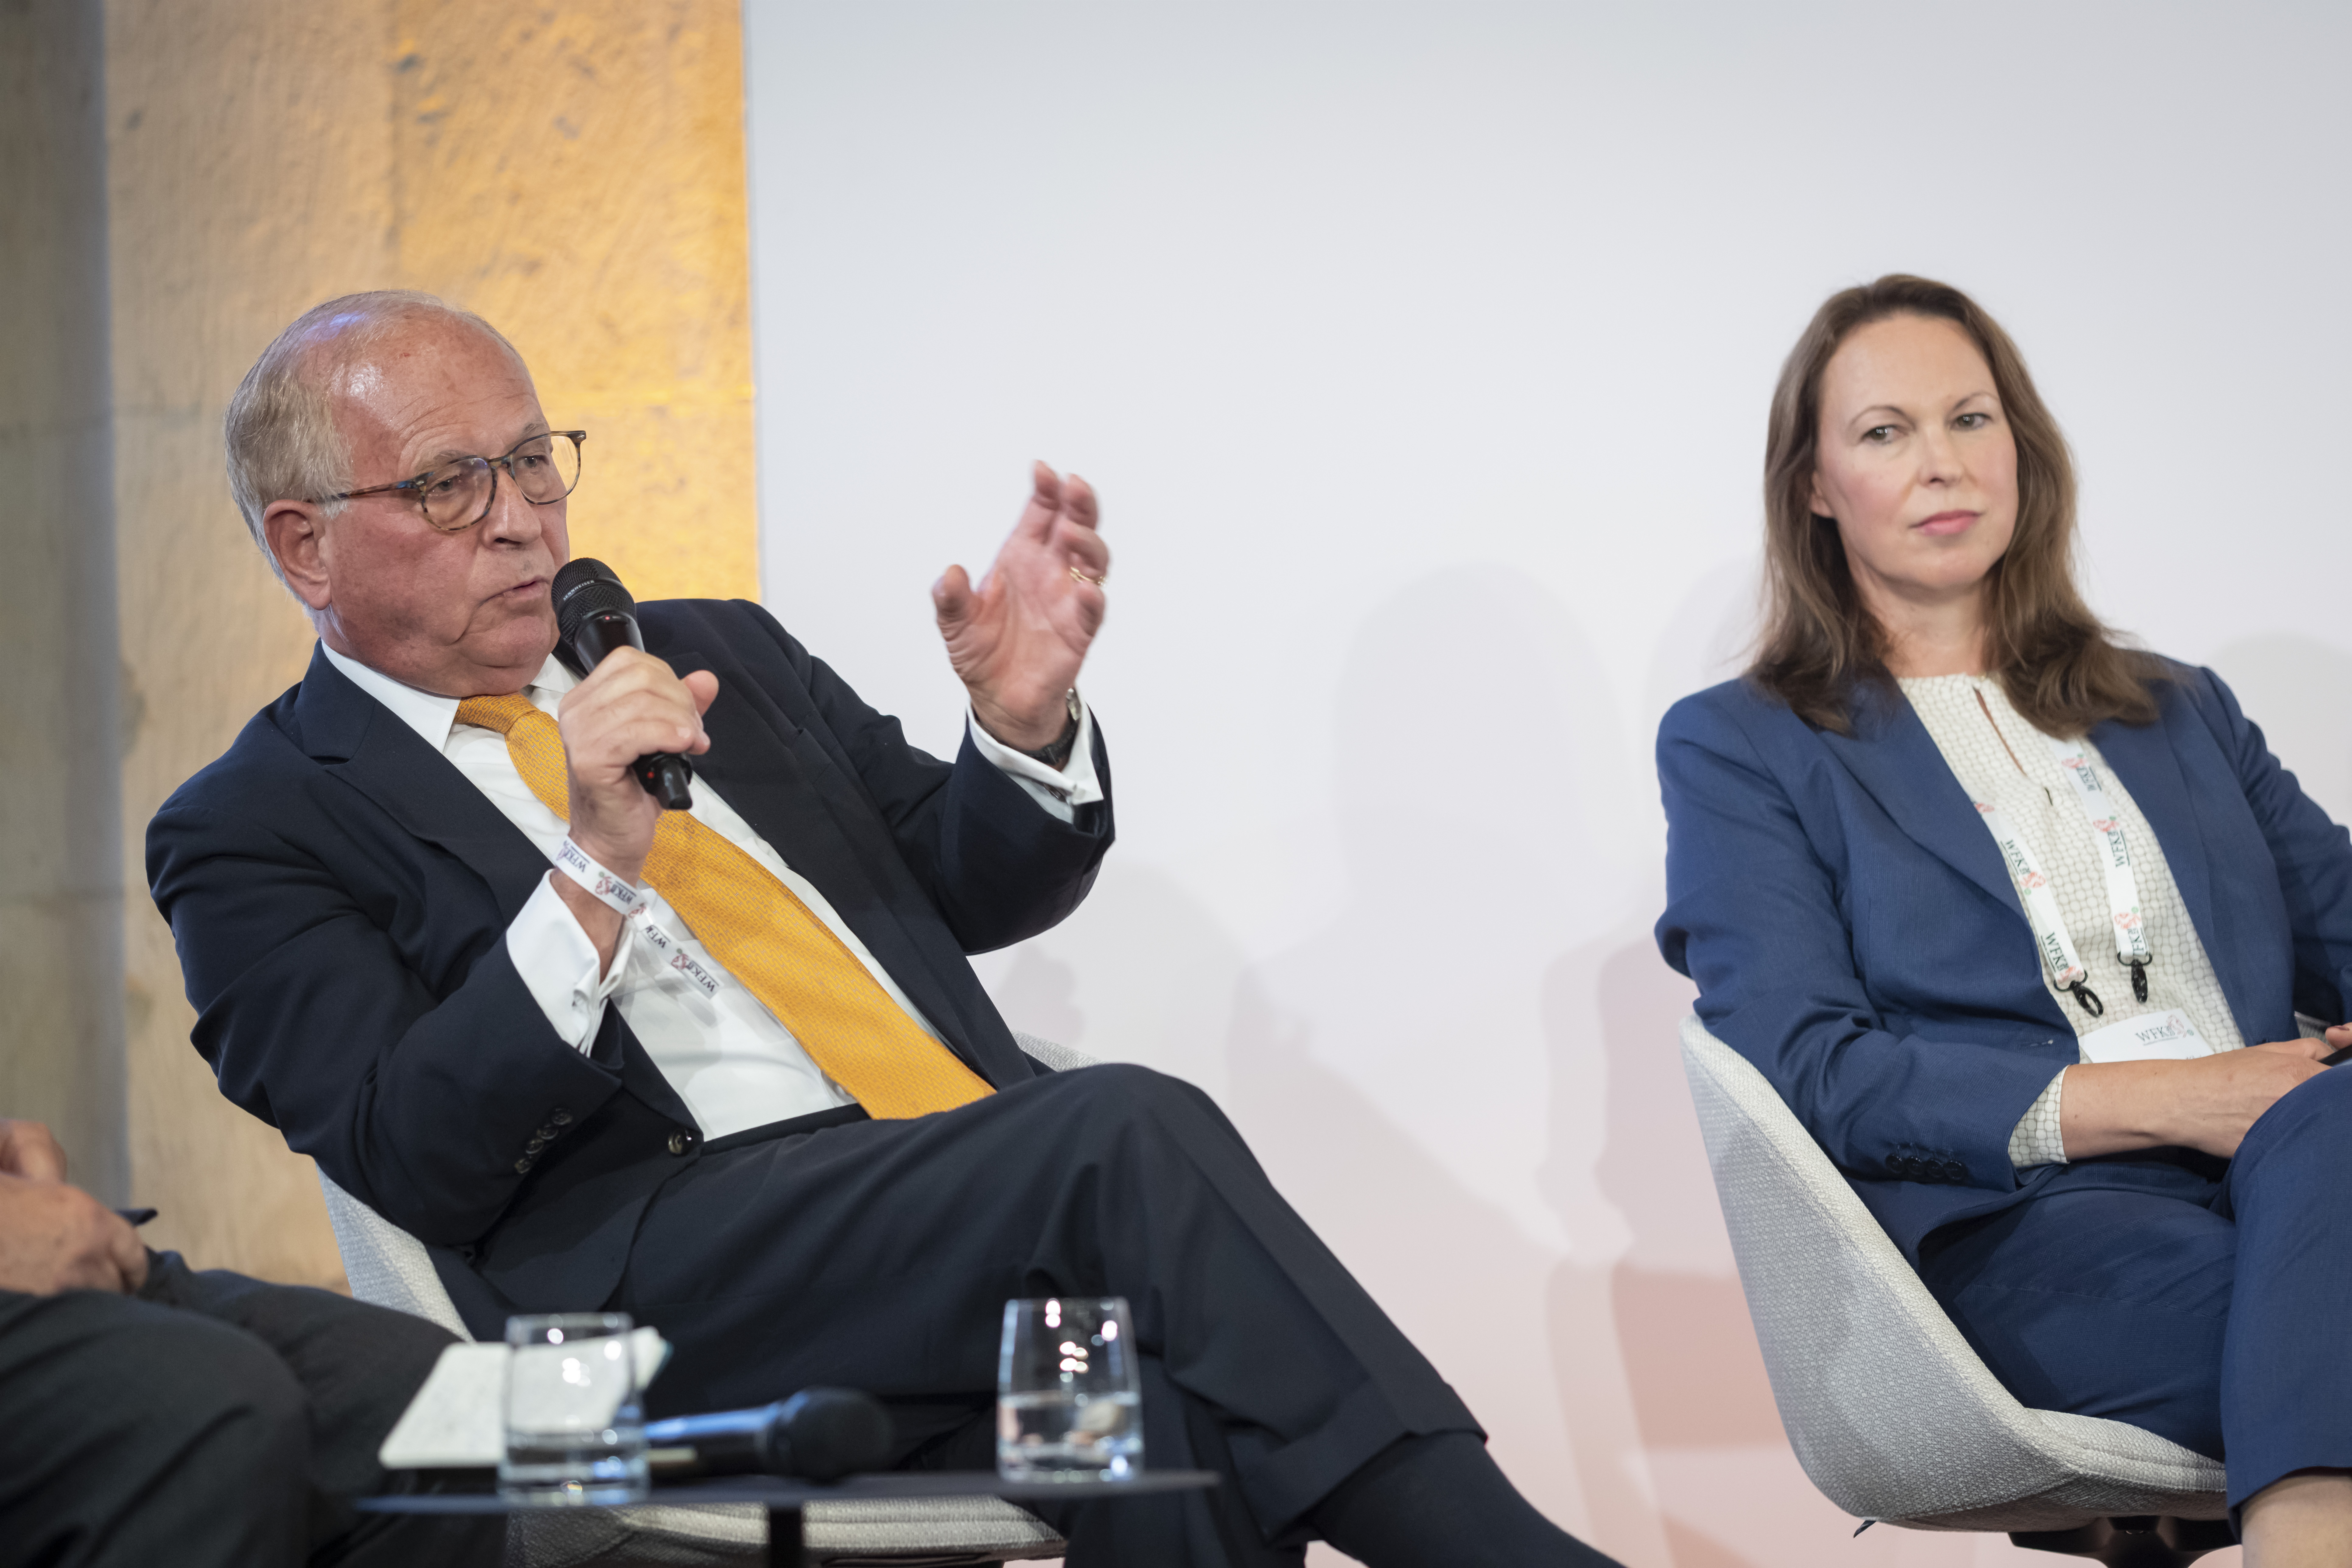  Prof. Dr. Wolfgang Ischinger und Dr. Margarete Klein, Stiftung Wissenschaft und Politik 